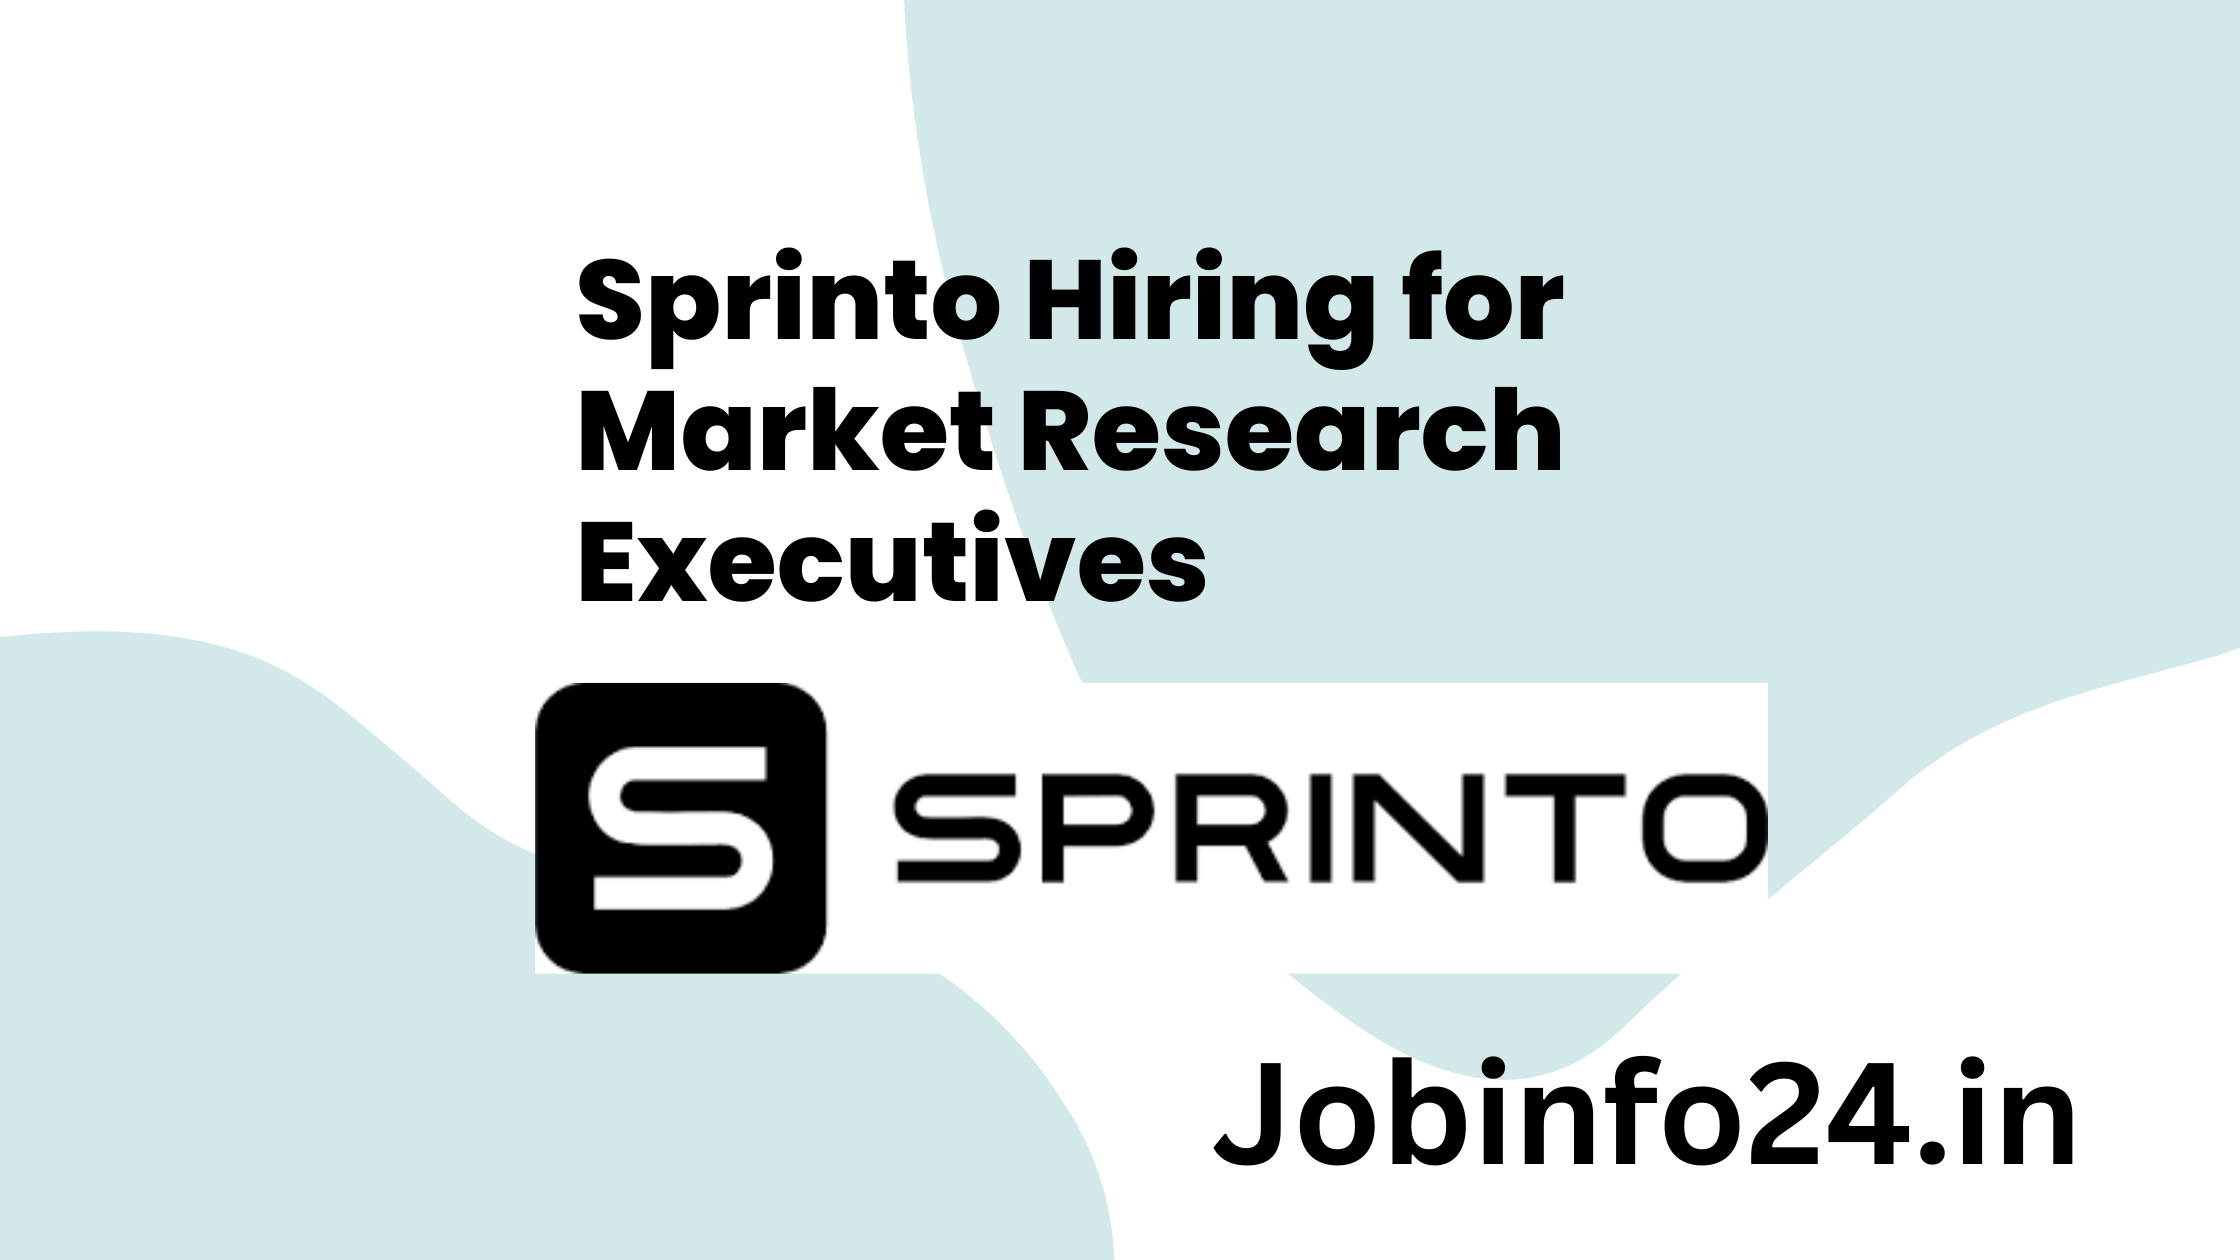 Sprinto Hiring for Market Research Executives